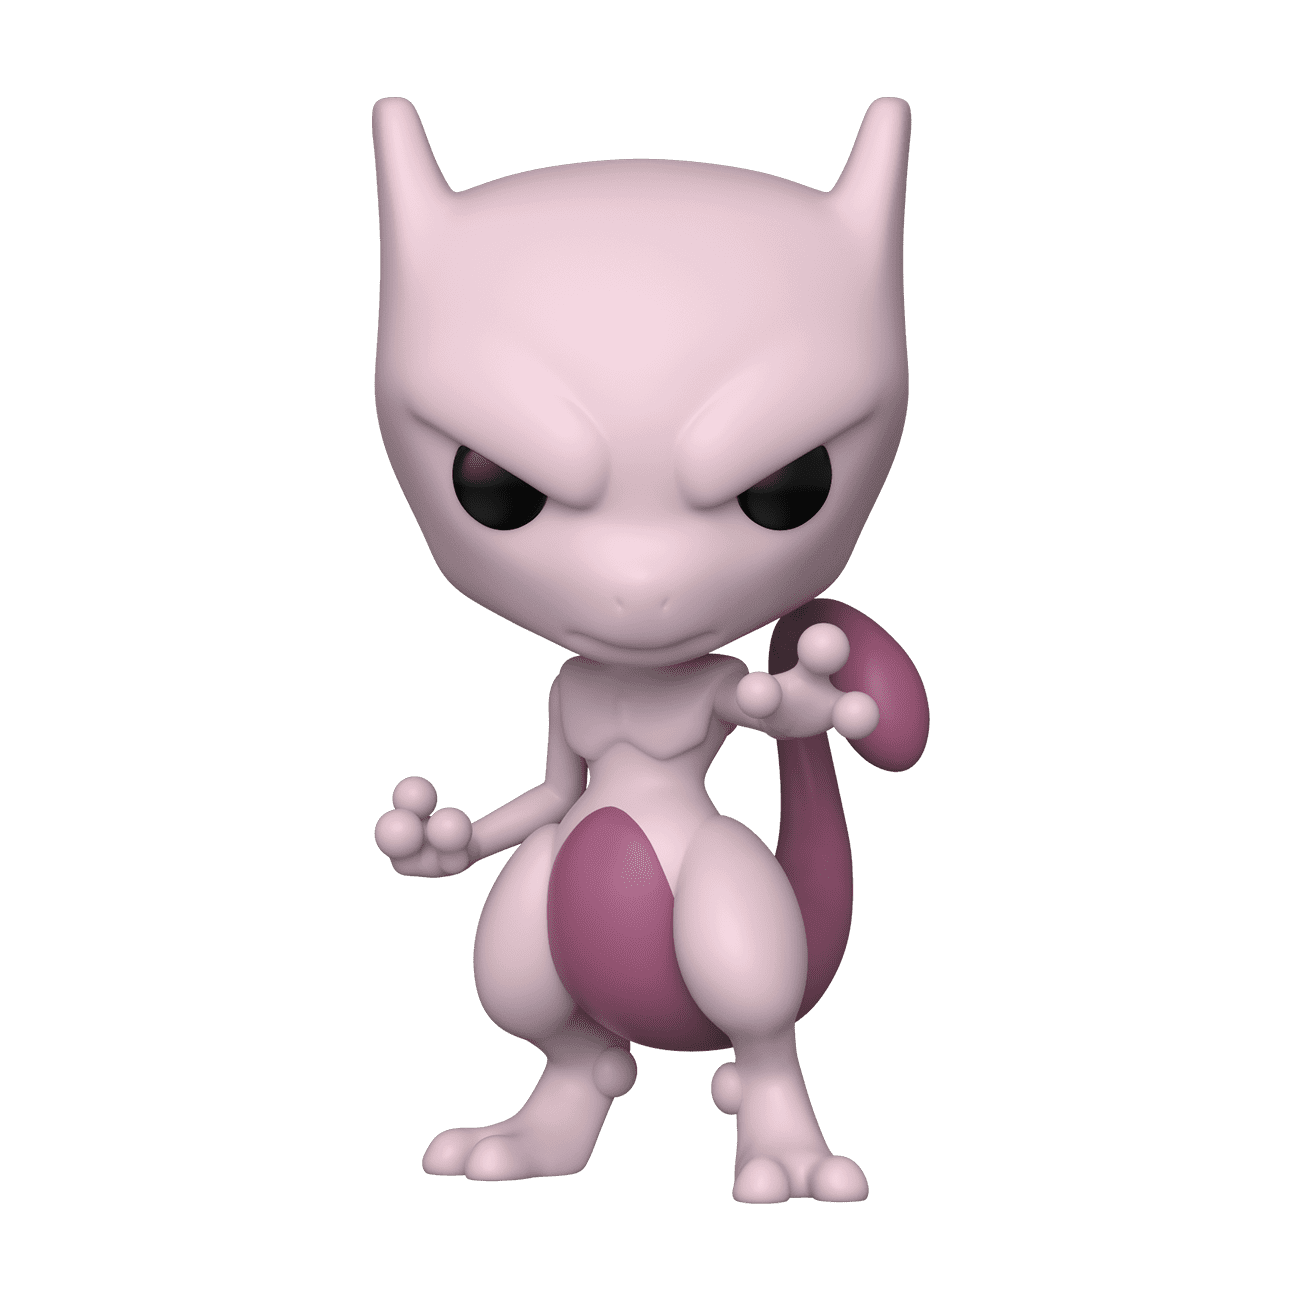 Funko Pop! Games: Pokemon - Mewtwo